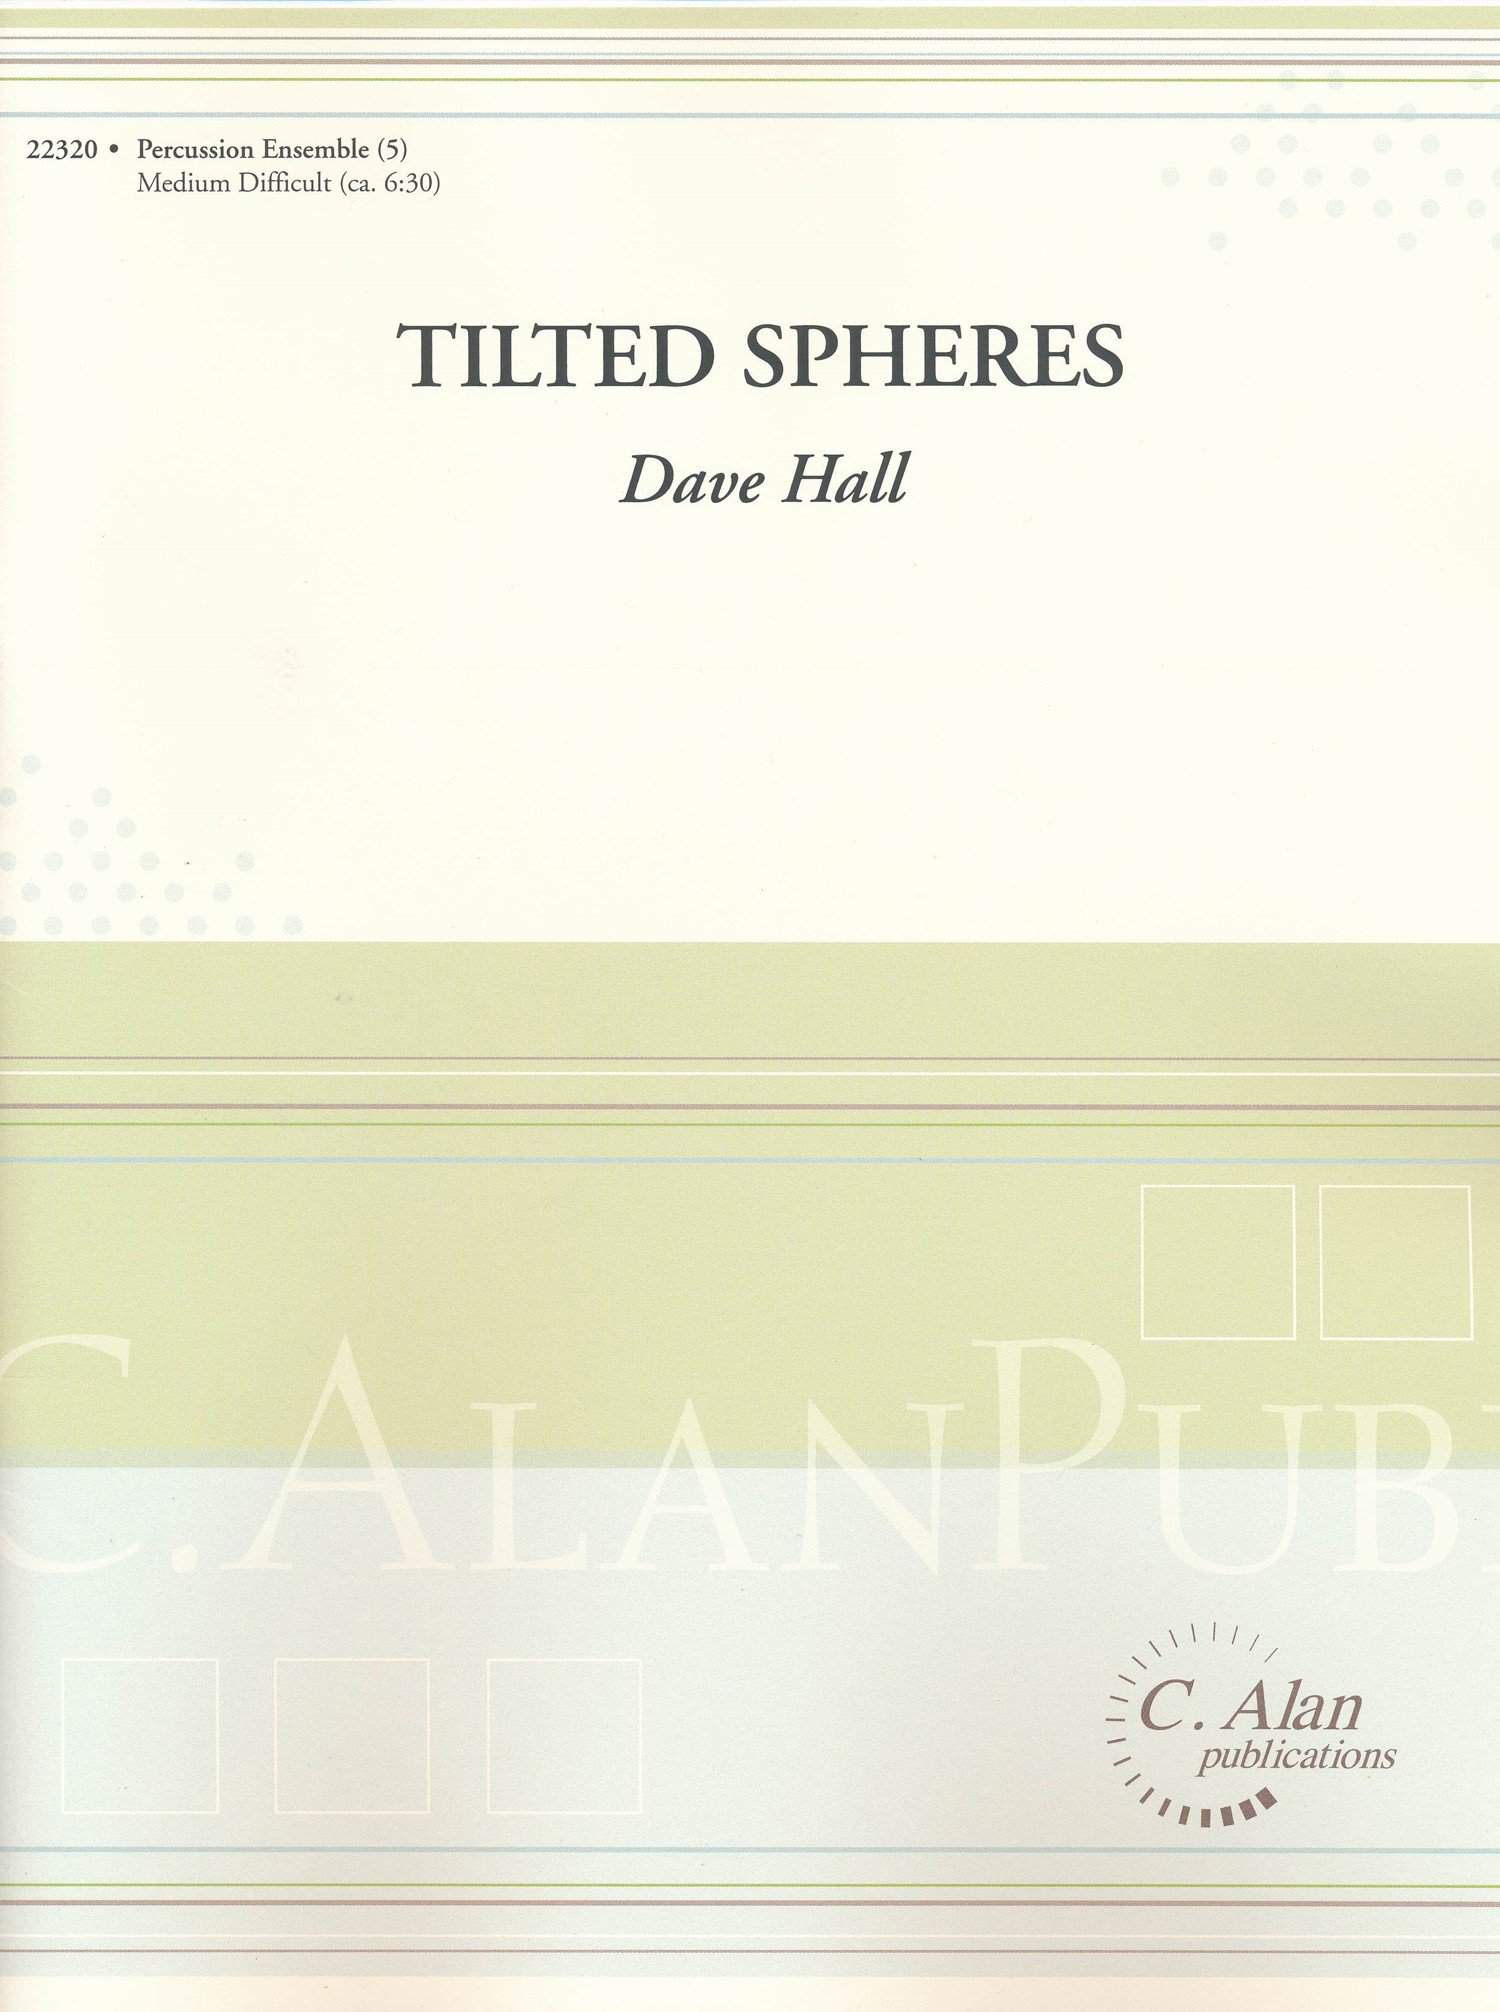 richard serra tilted spheres